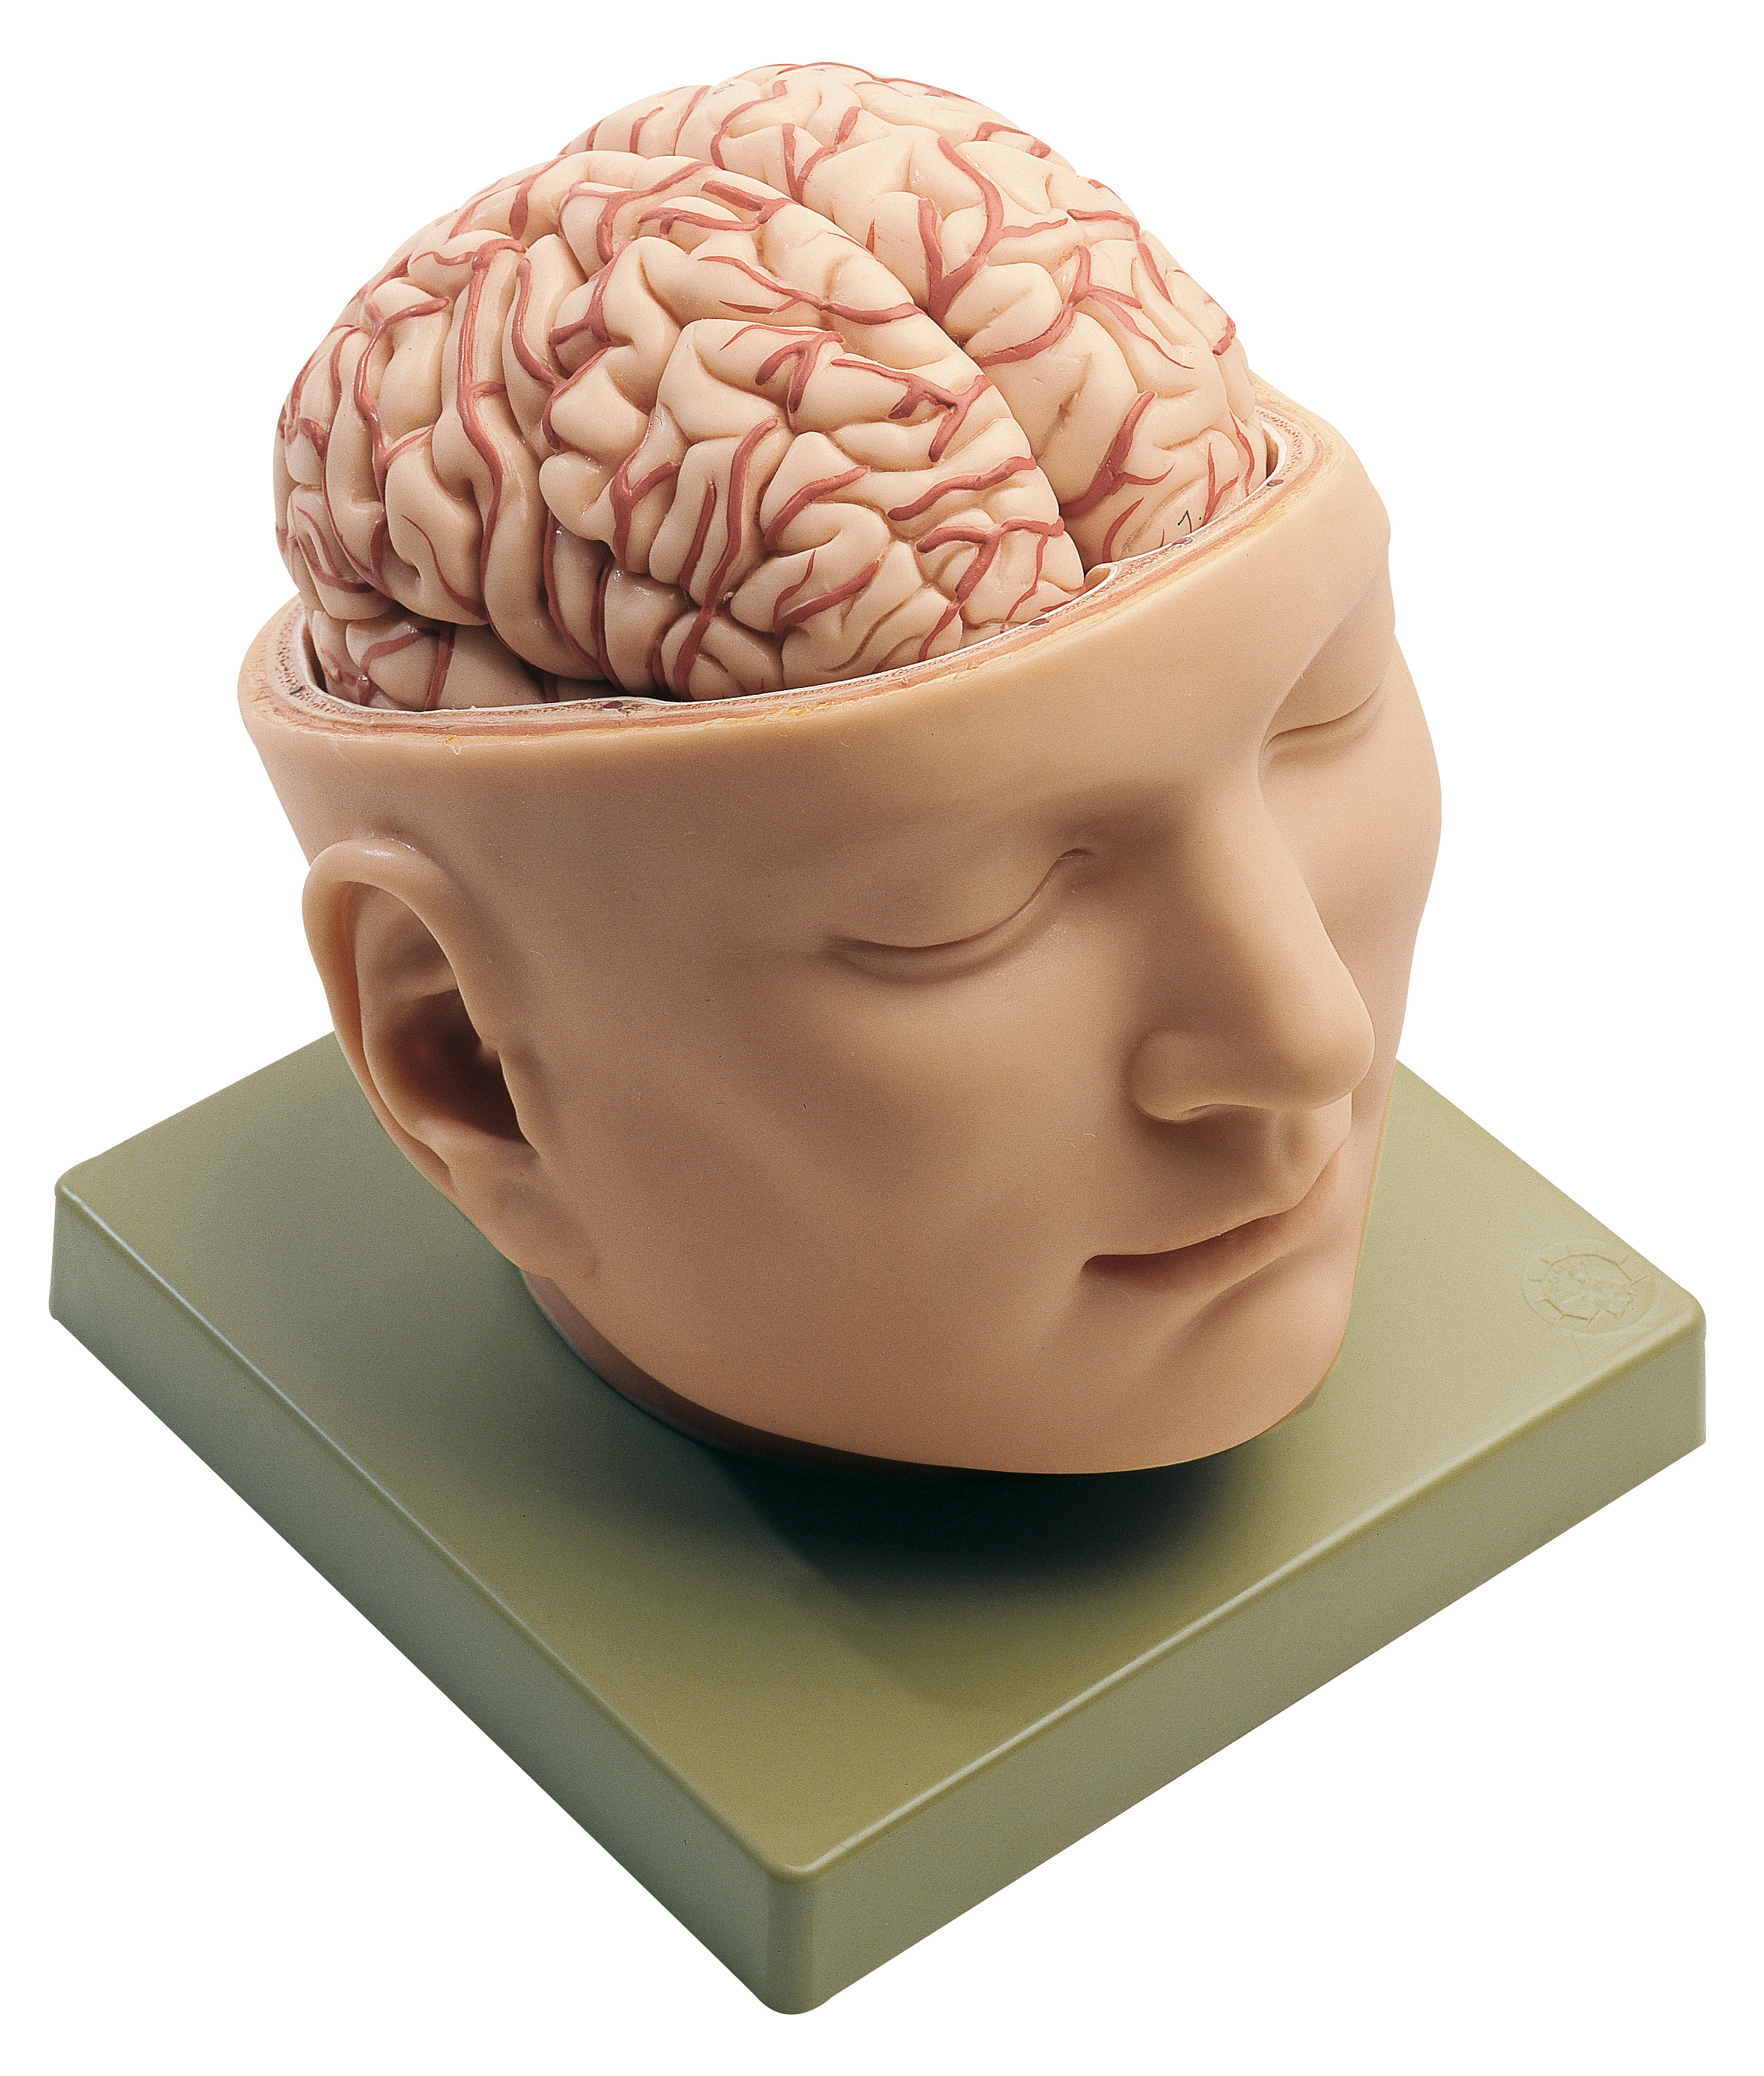 Мозг без головы крокус. Мозг в голове. Человеческая голова.